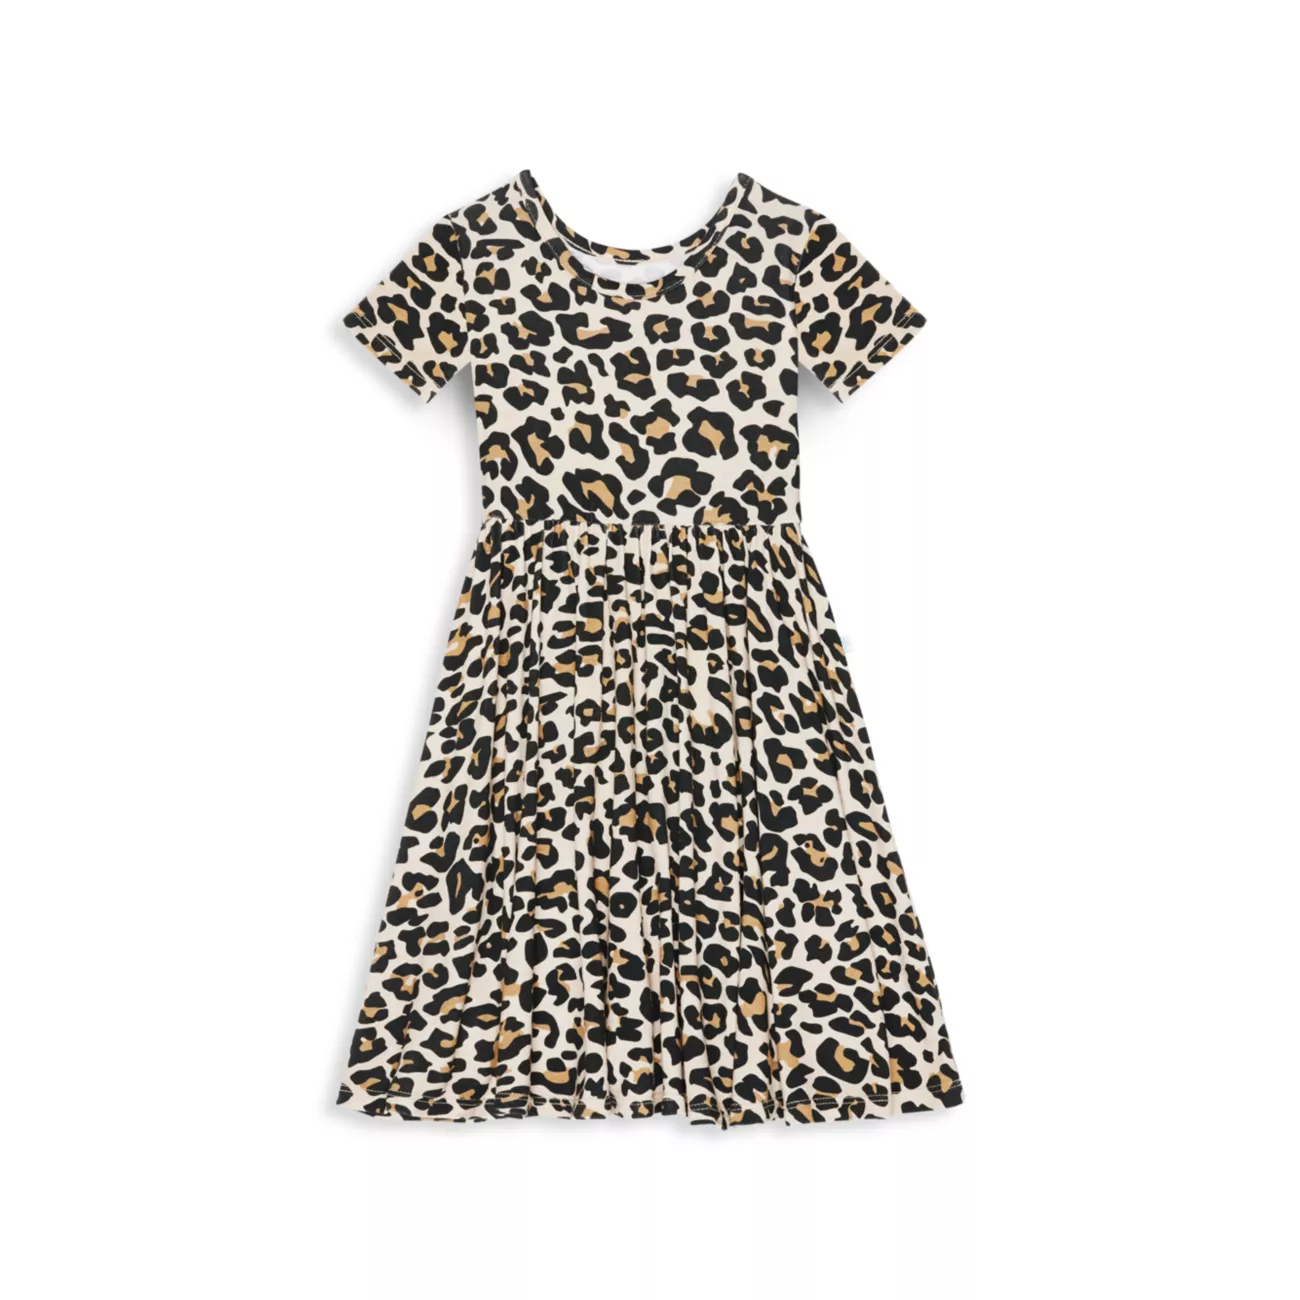 Базовое платье с леопардовым принтом Lana с короткими рукавами для девочек Posh Peanut